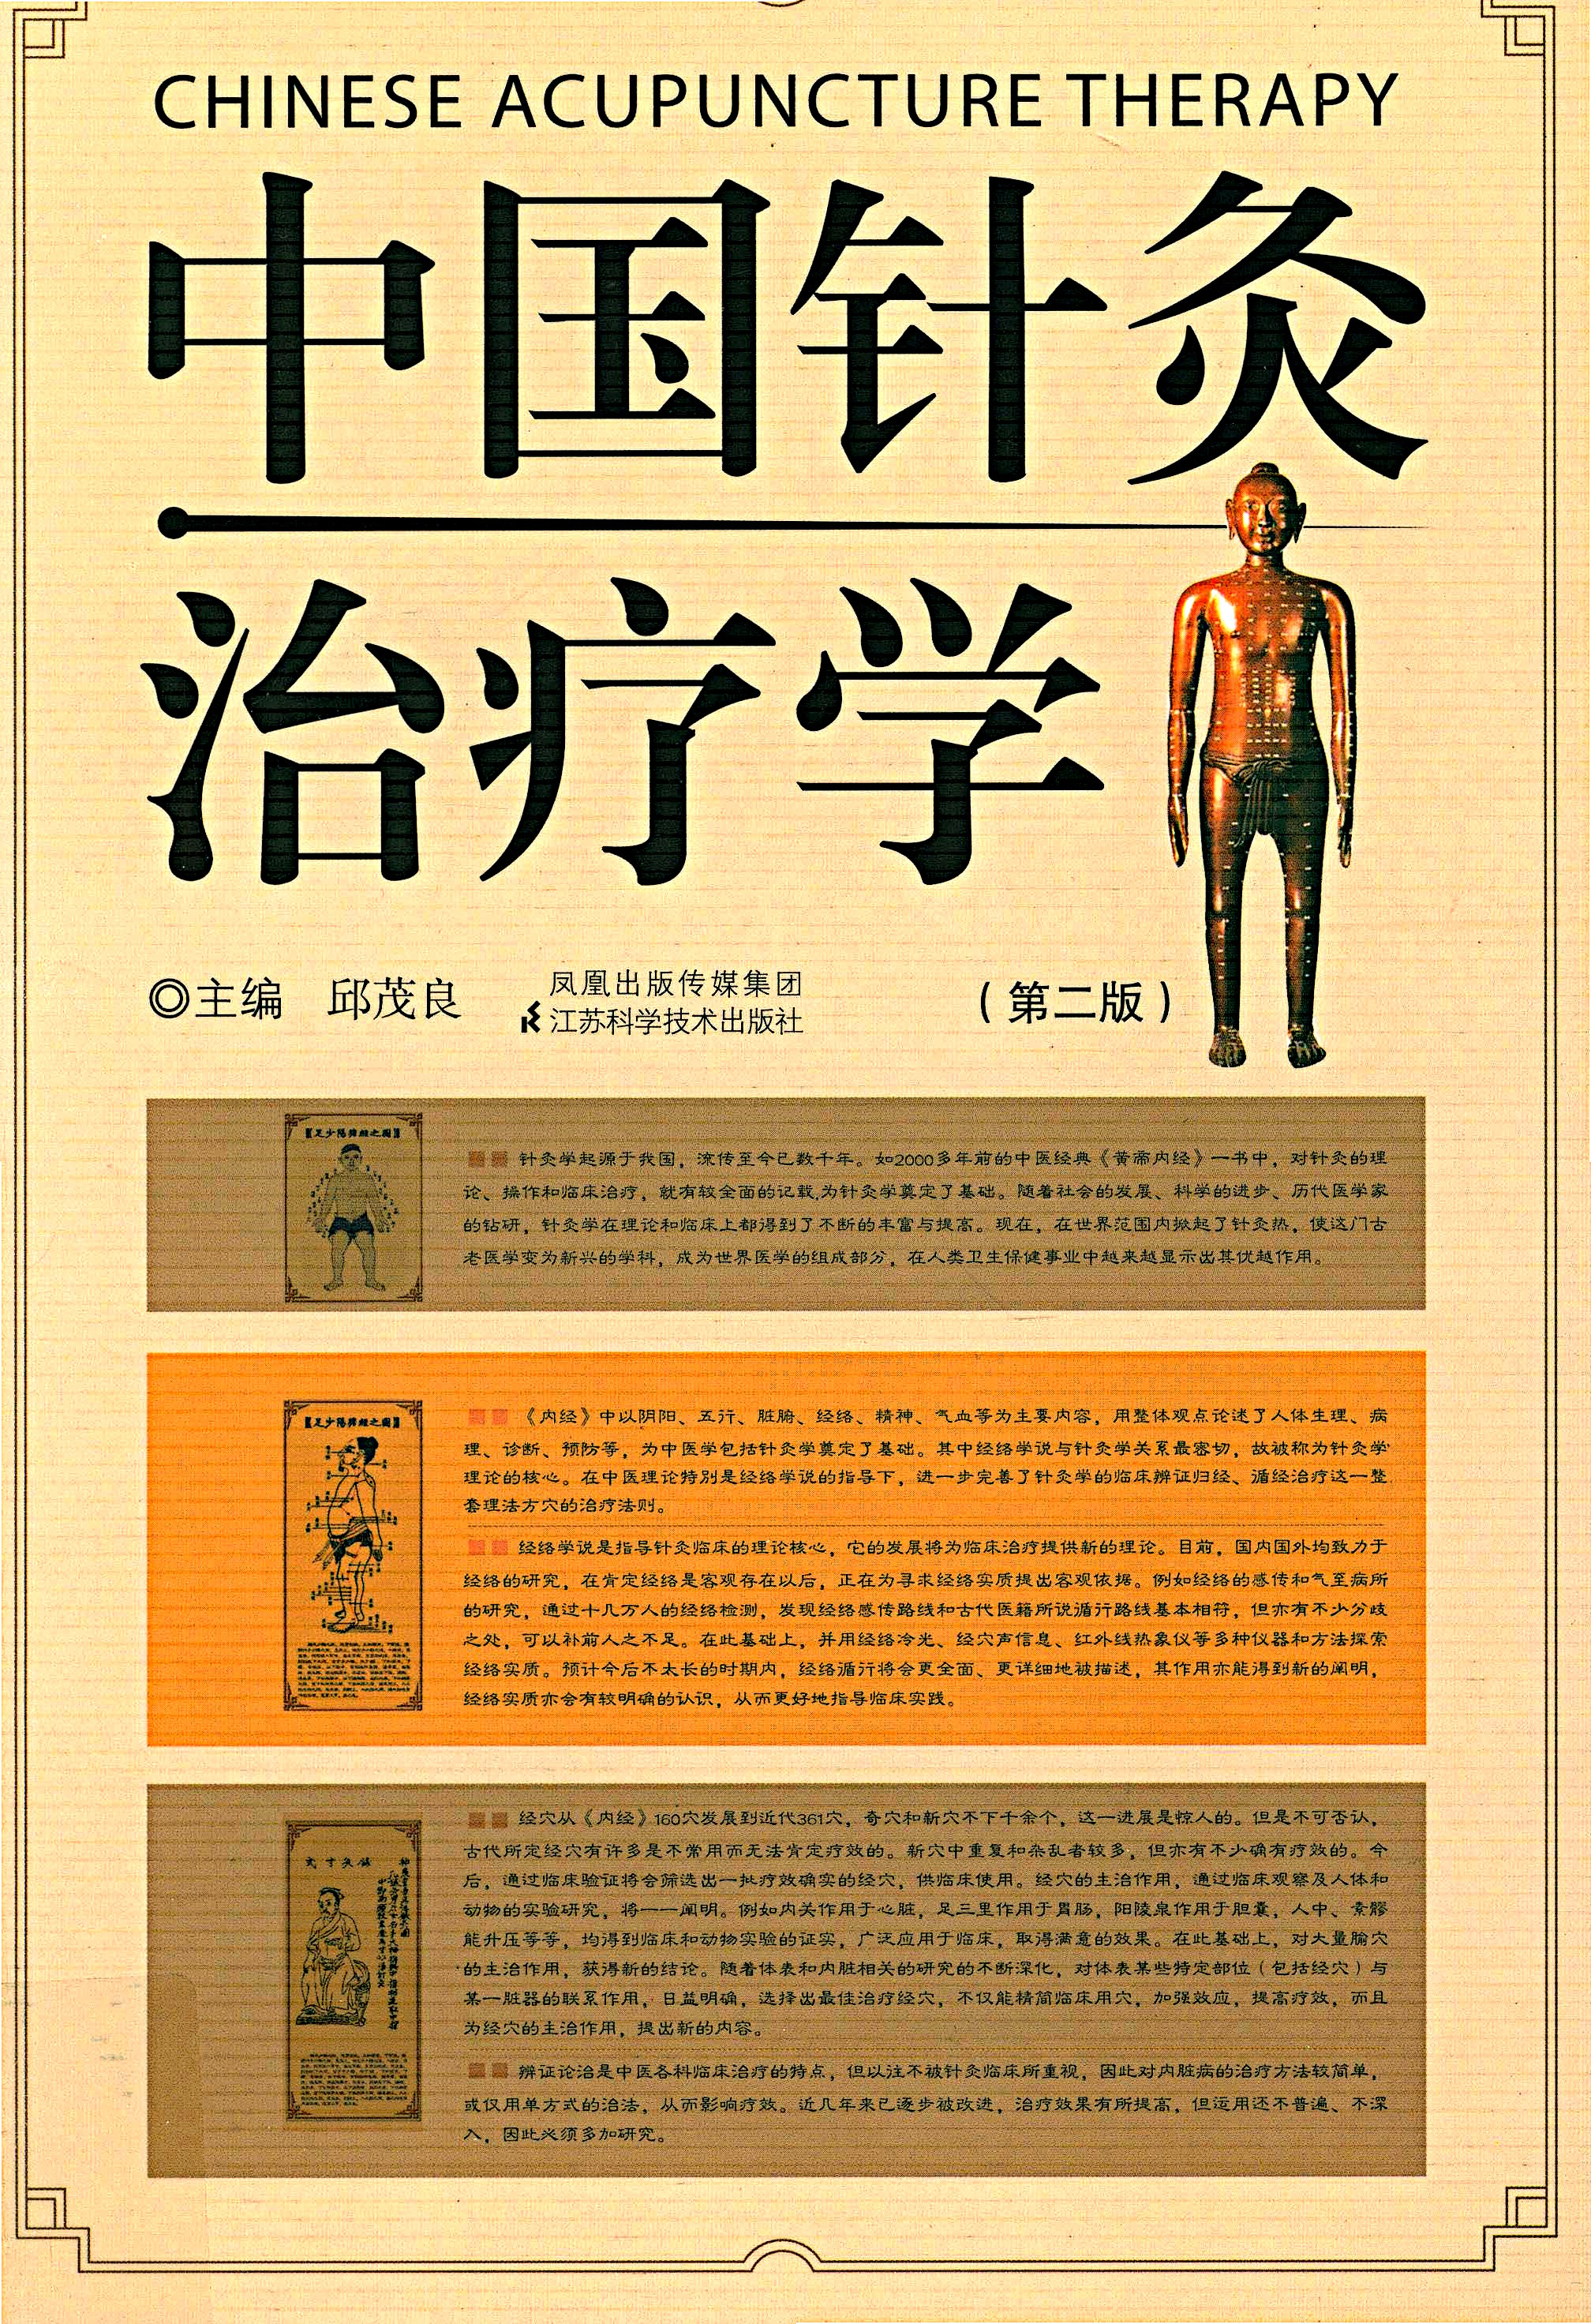 电子书- 中国针灸治疗学(第2版) 邱茂良编著江苏科学技术出版社2009年 